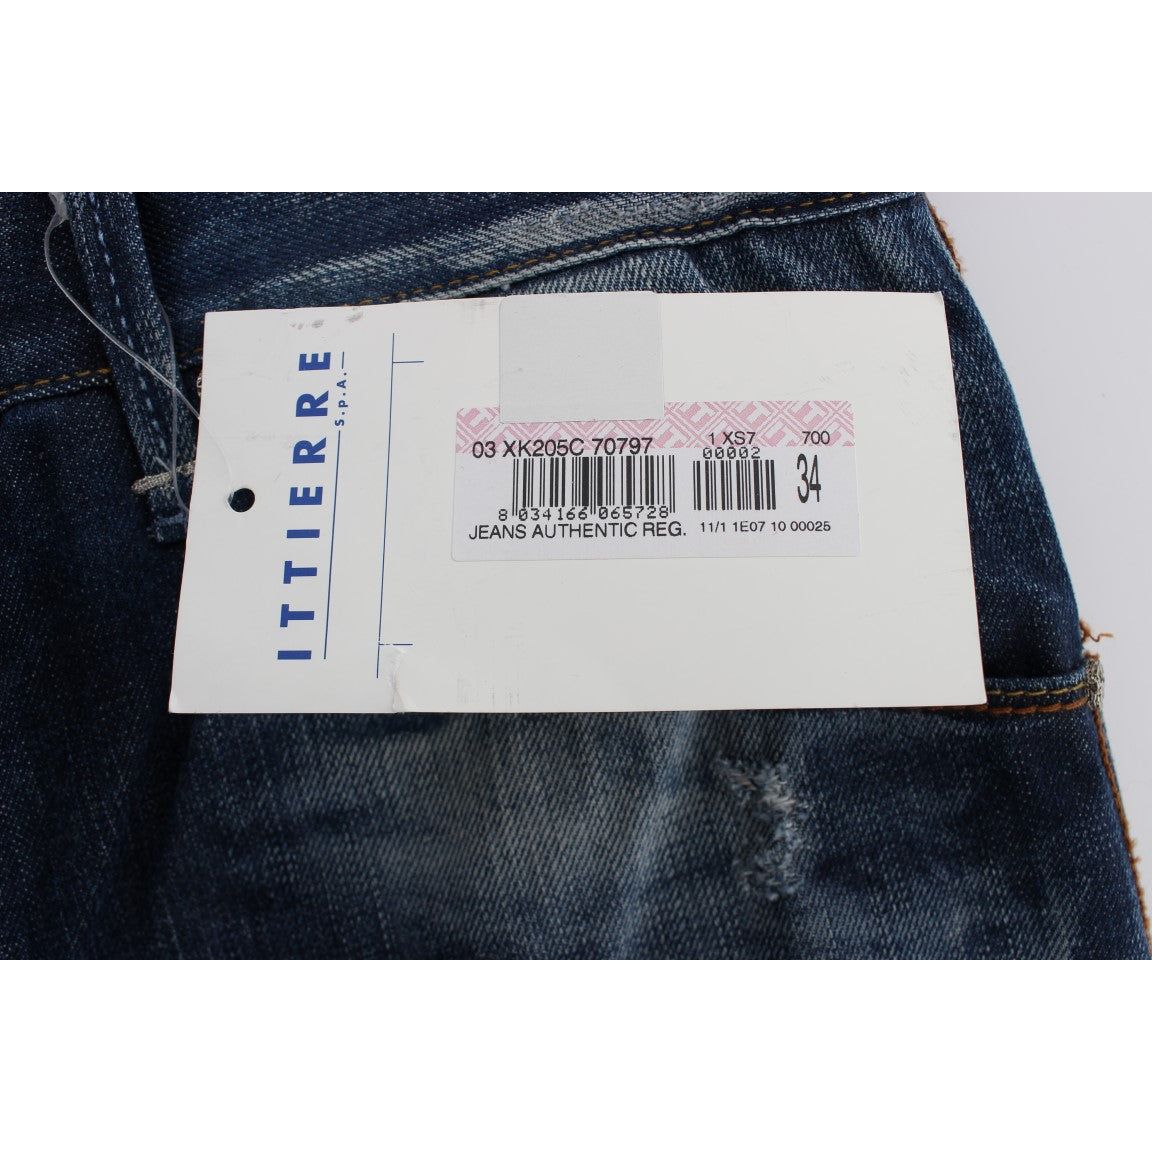 Acht Authentic Regular Fit Blue Wash Jeans blue-wash-cotton-denim-regular-fit-jeans-2 292687-blue-wash-cotton-denim-regular-fit-jeans-4-5.jpg